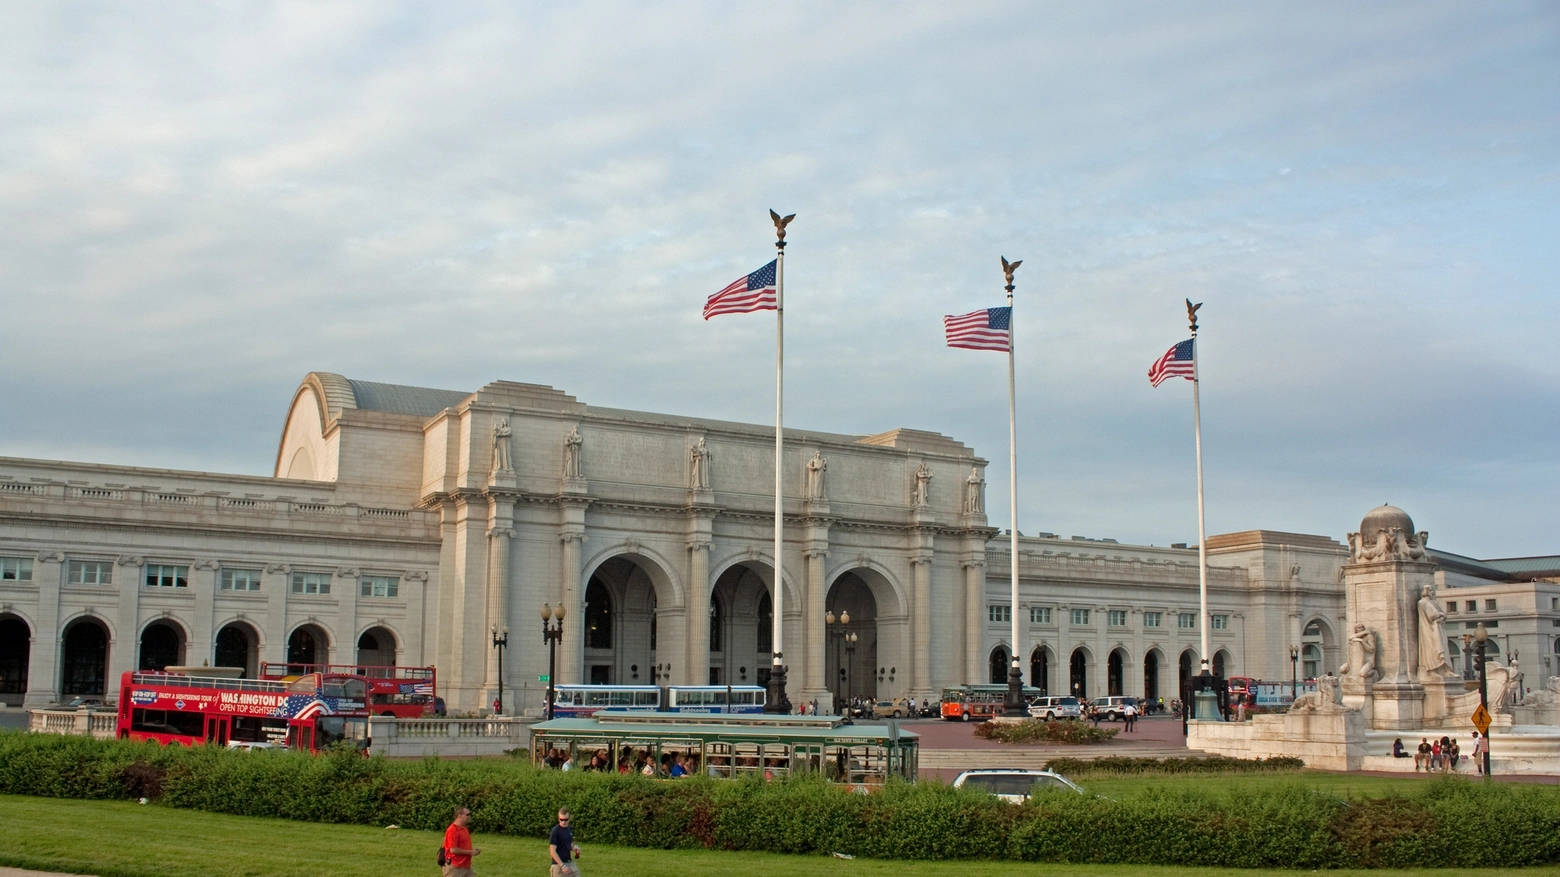 Union Station, Washington (Wikipedia, Wknight94)